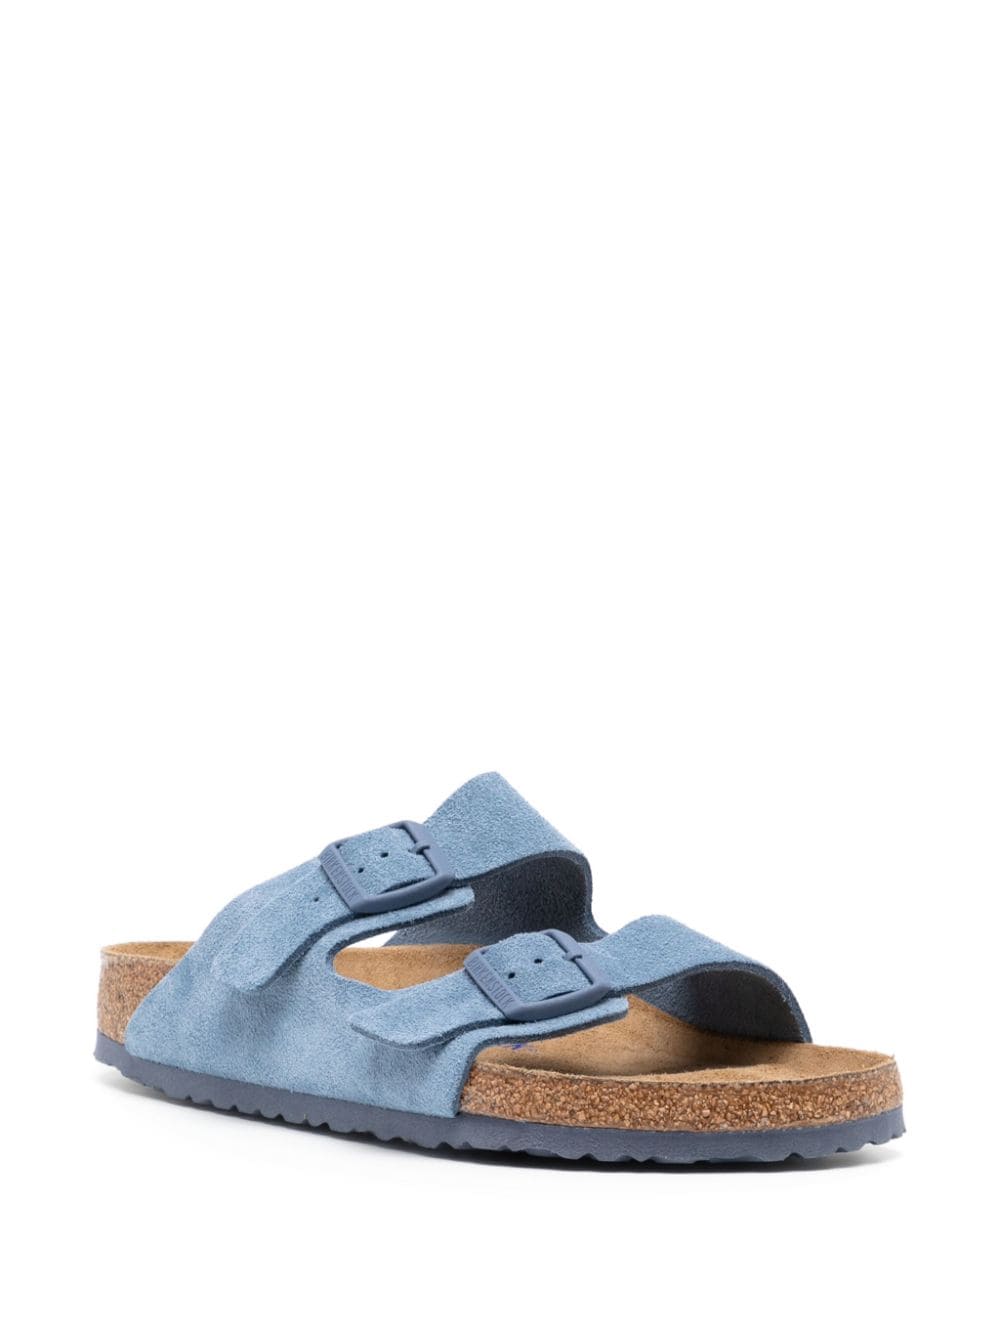 Birkenstock buckled open toe suede slippers - Blauw